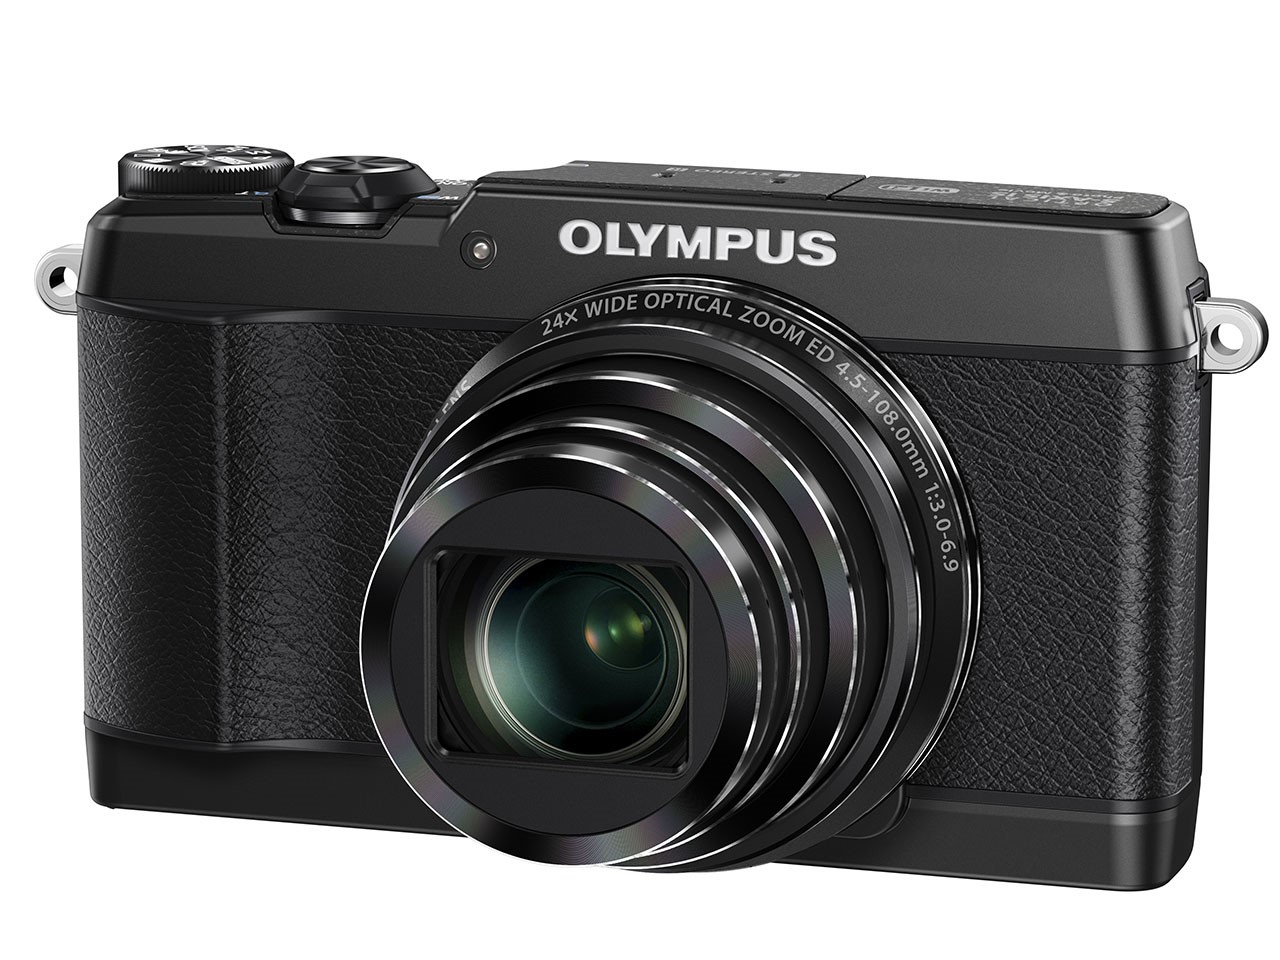 Olympus Stylus SH-1 Digital Camera